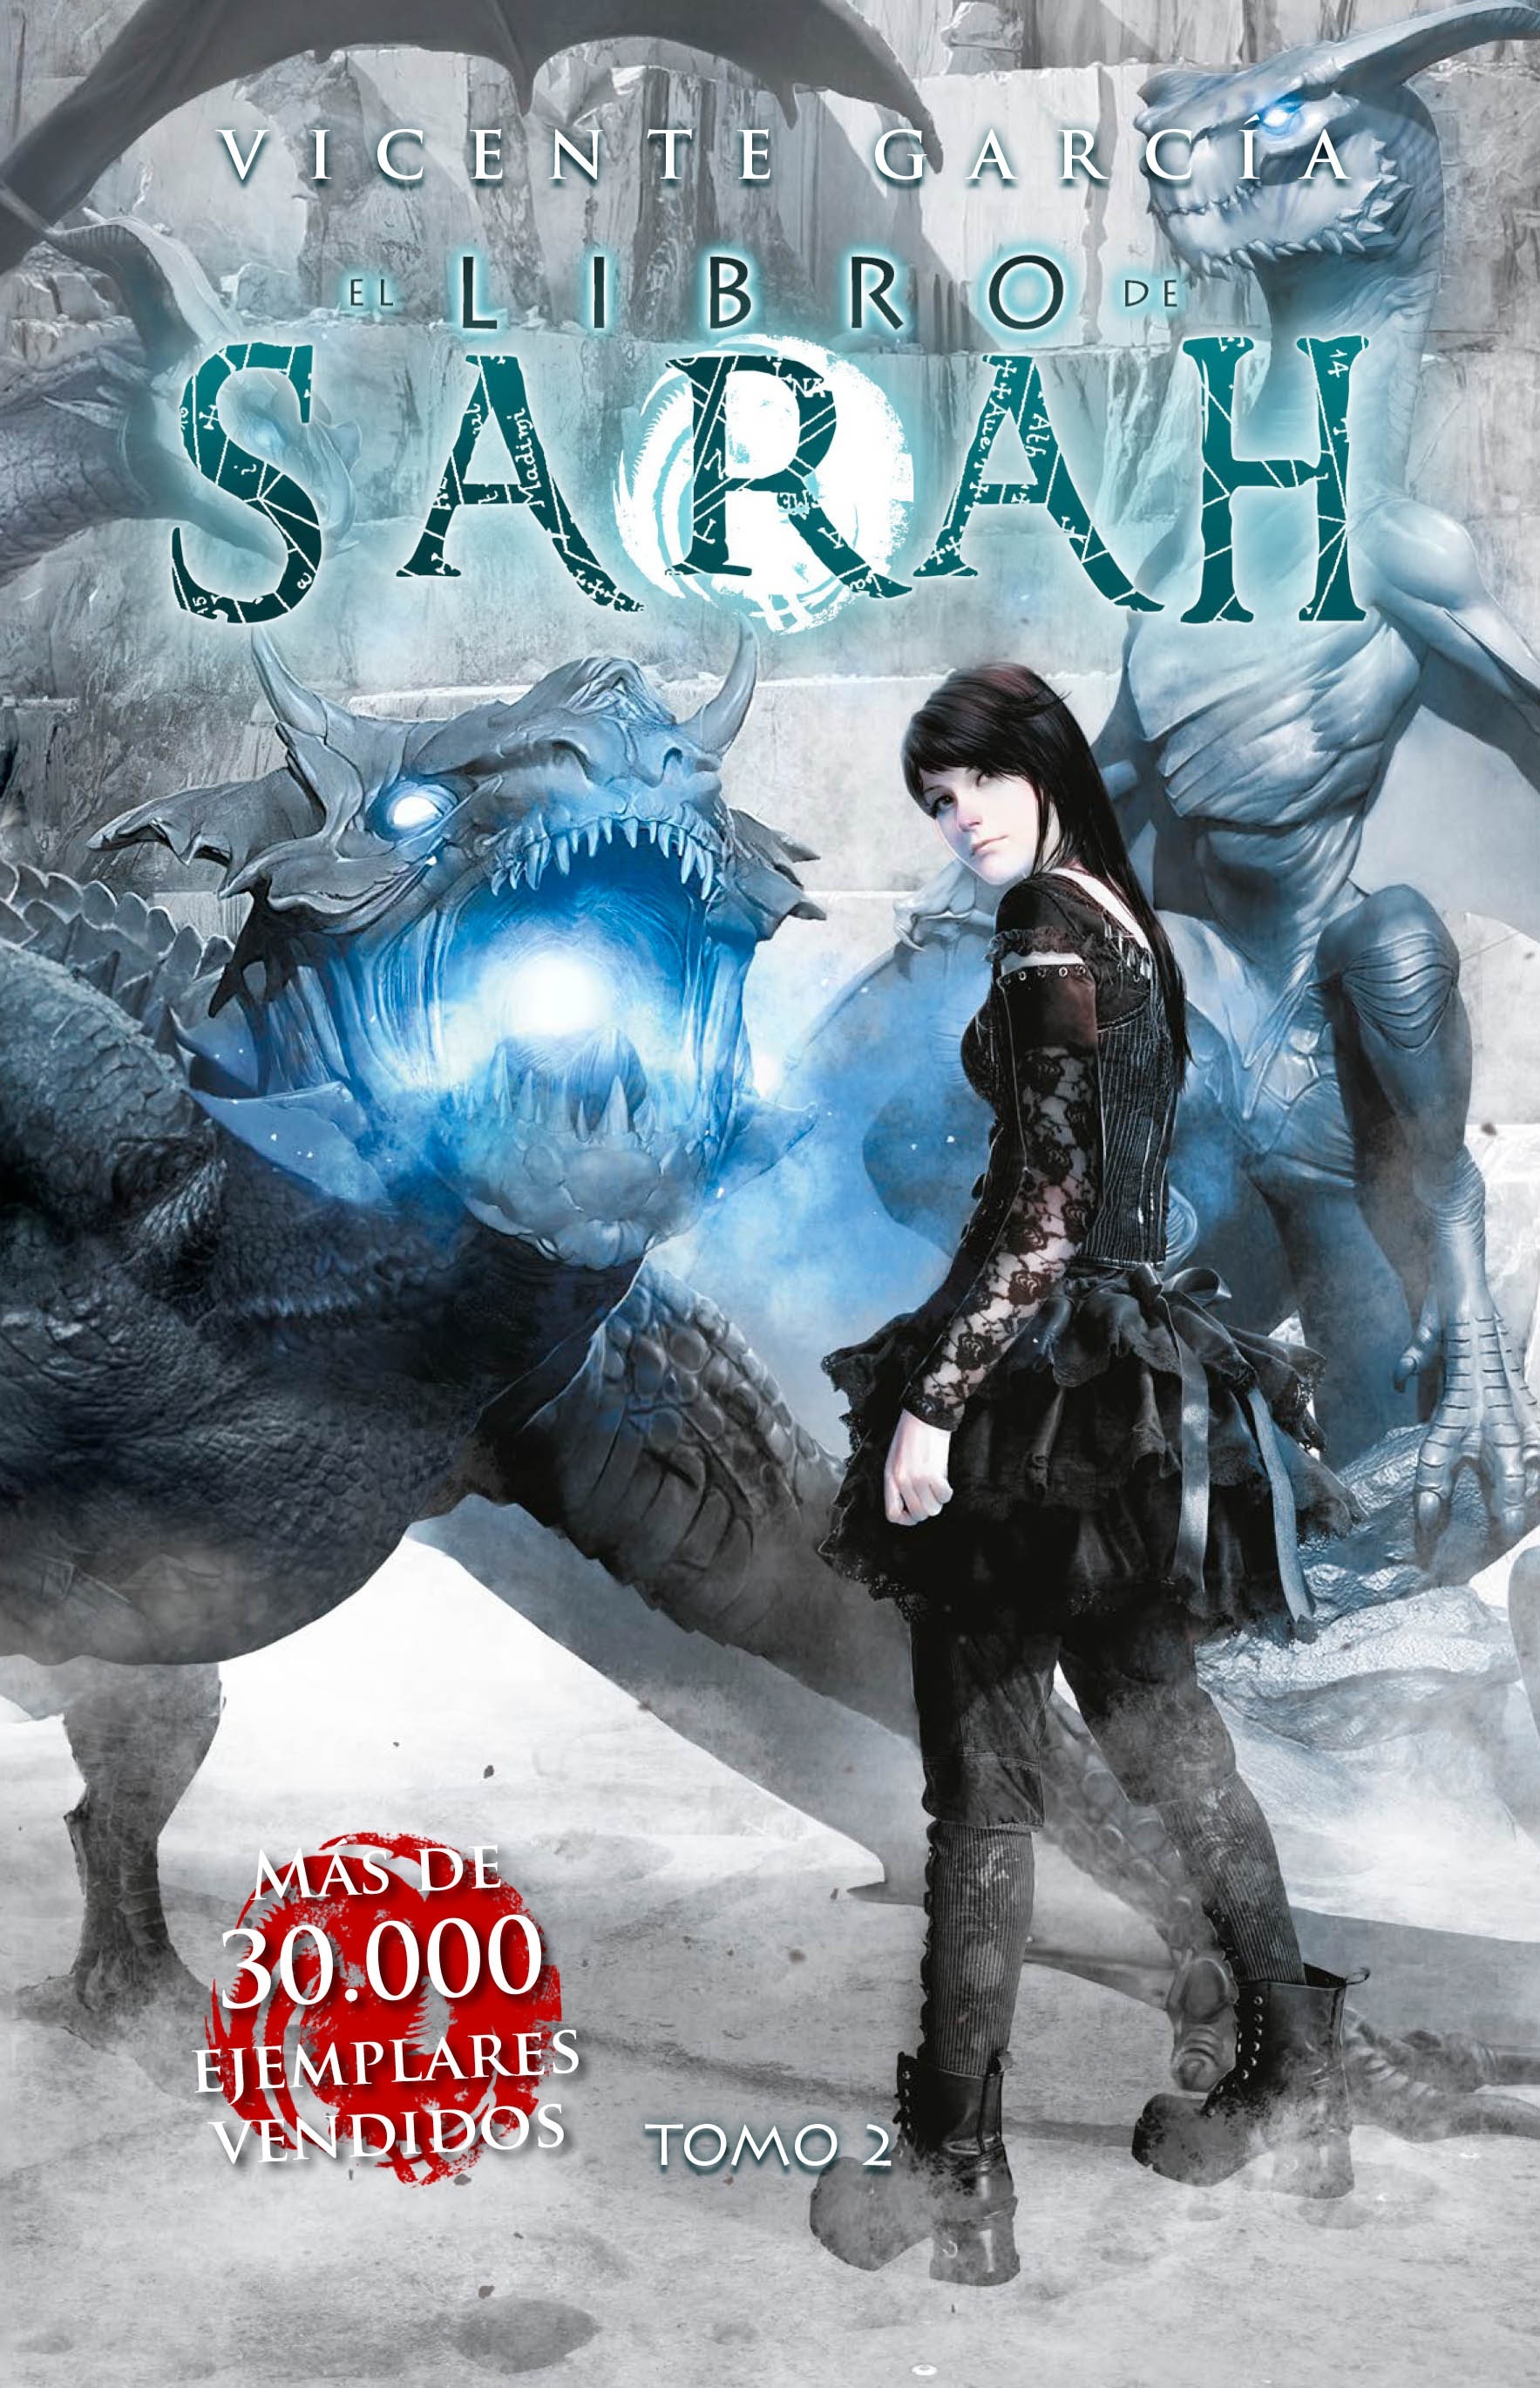 Libro de Sarah, El (tomo 2)